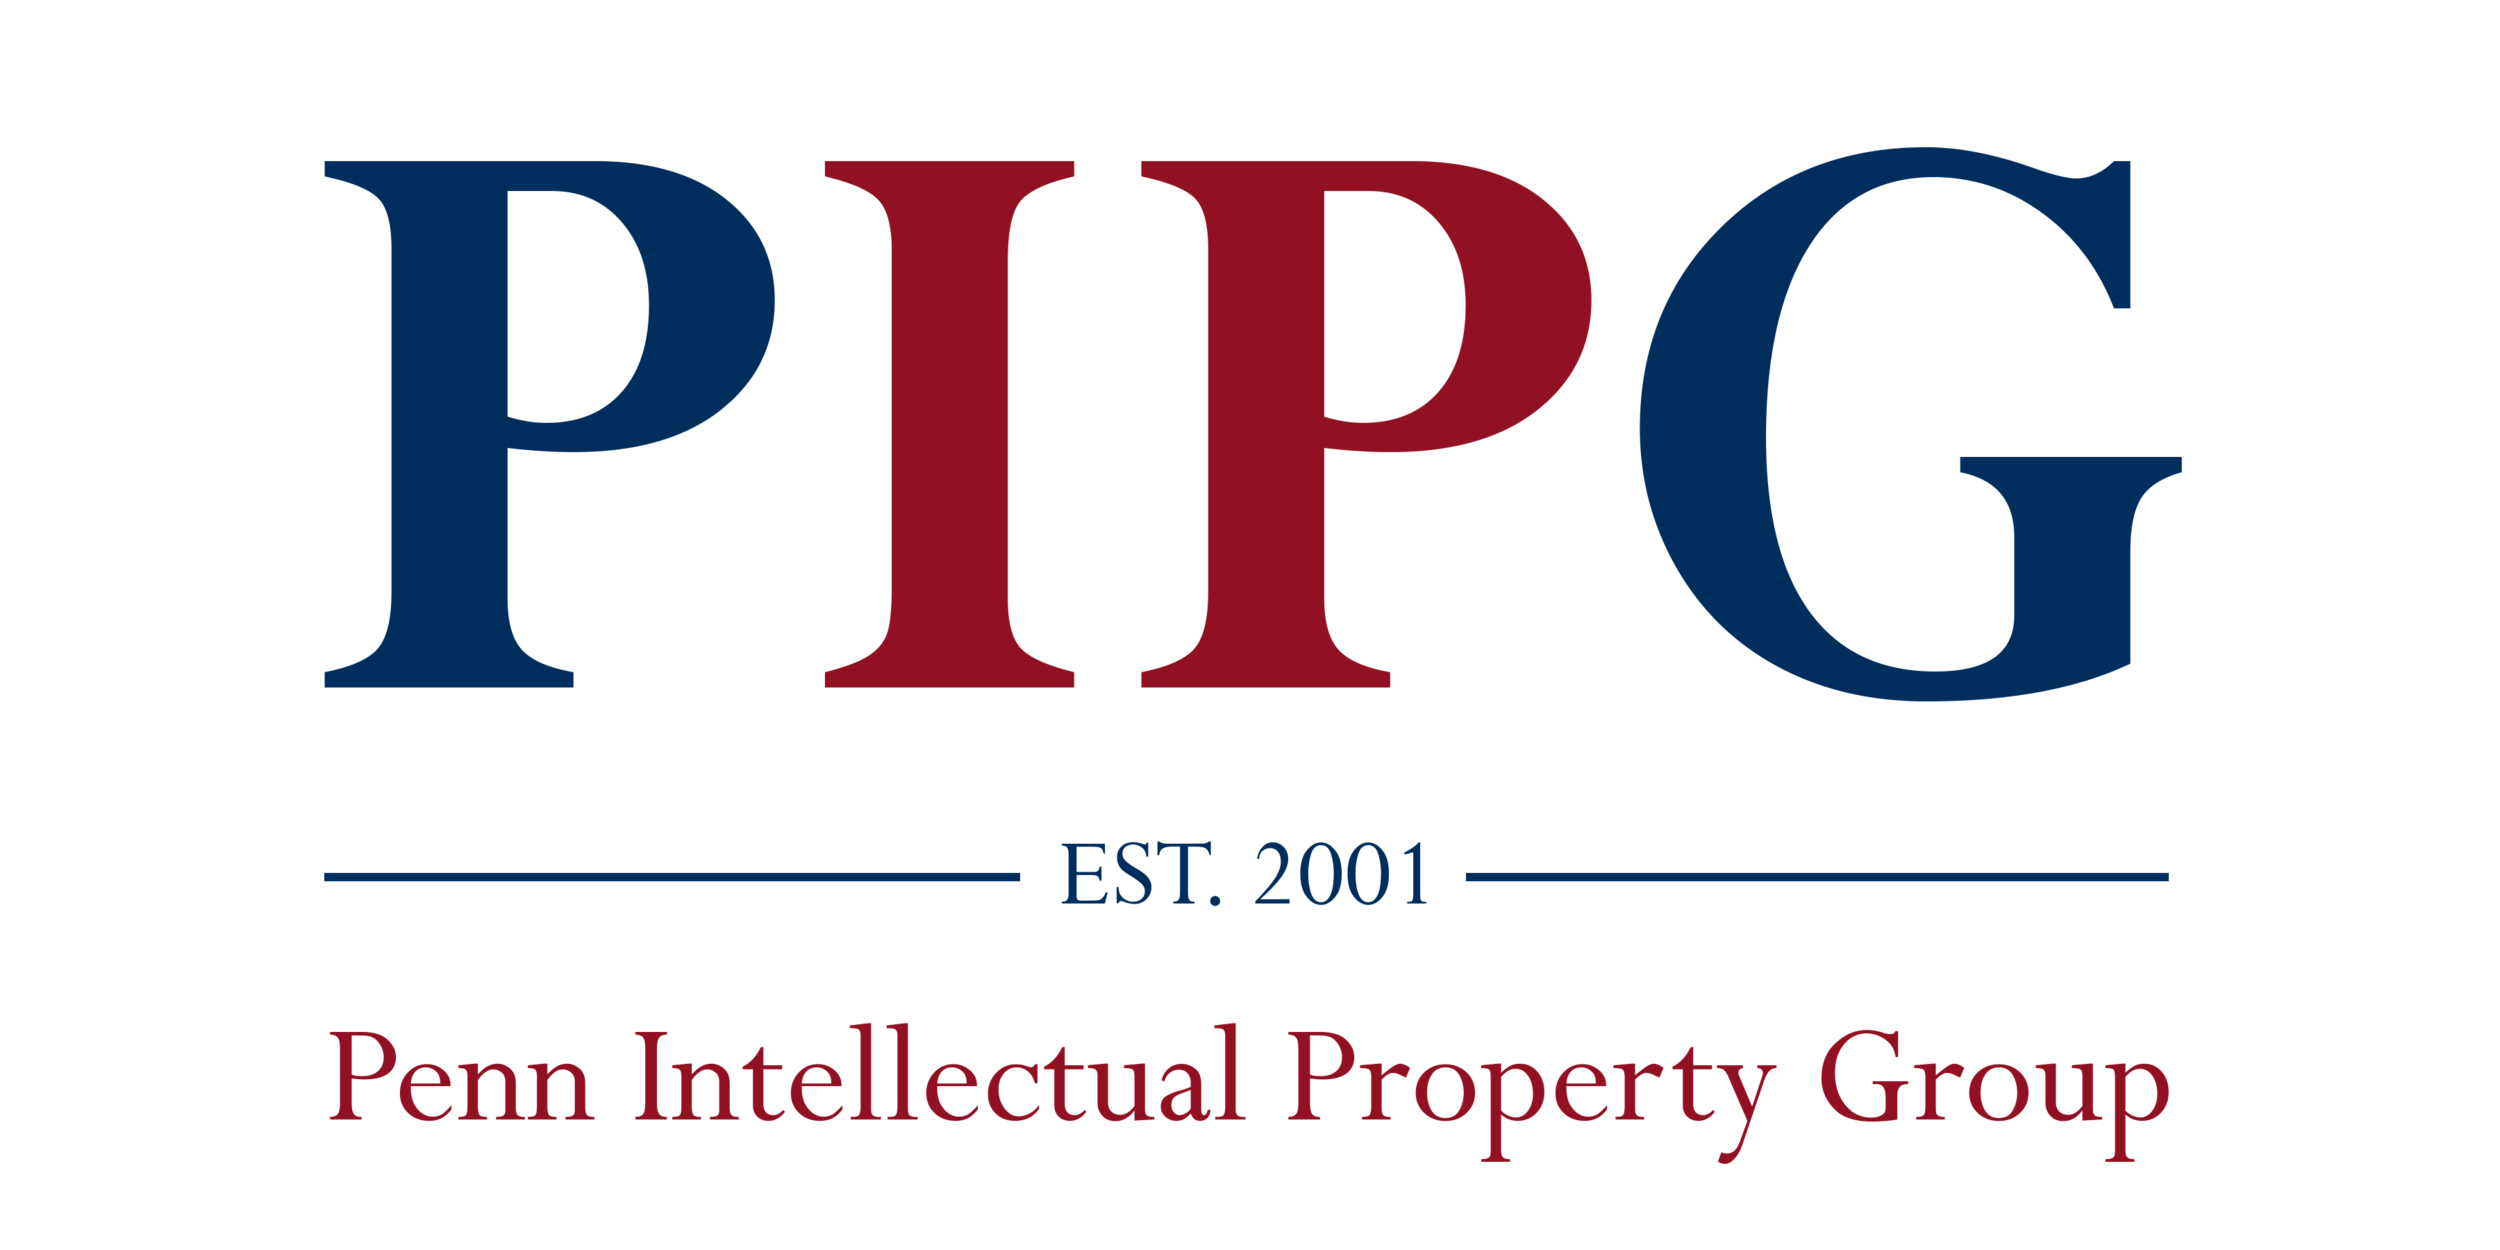 Penn Intellectual Property Group (PIPG)